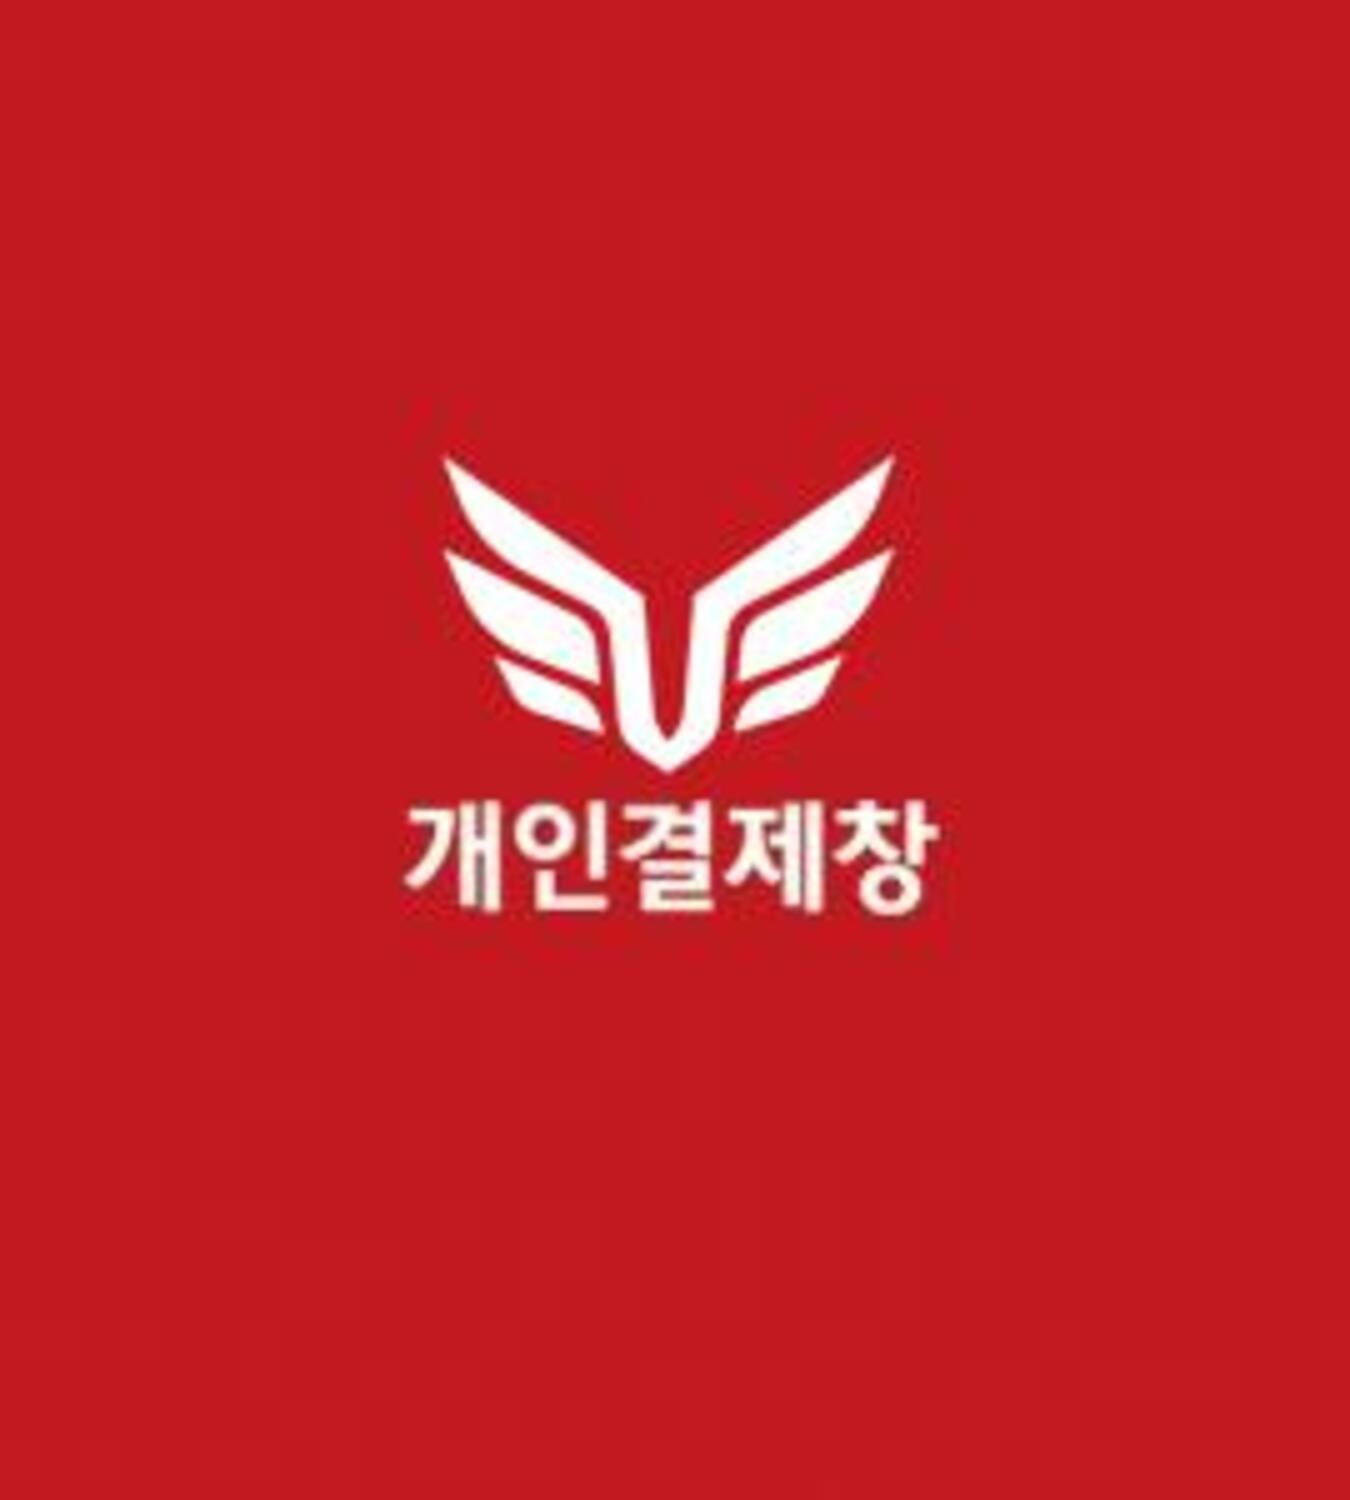 ★박상현프로팬밴드 고객님 개인결제창★